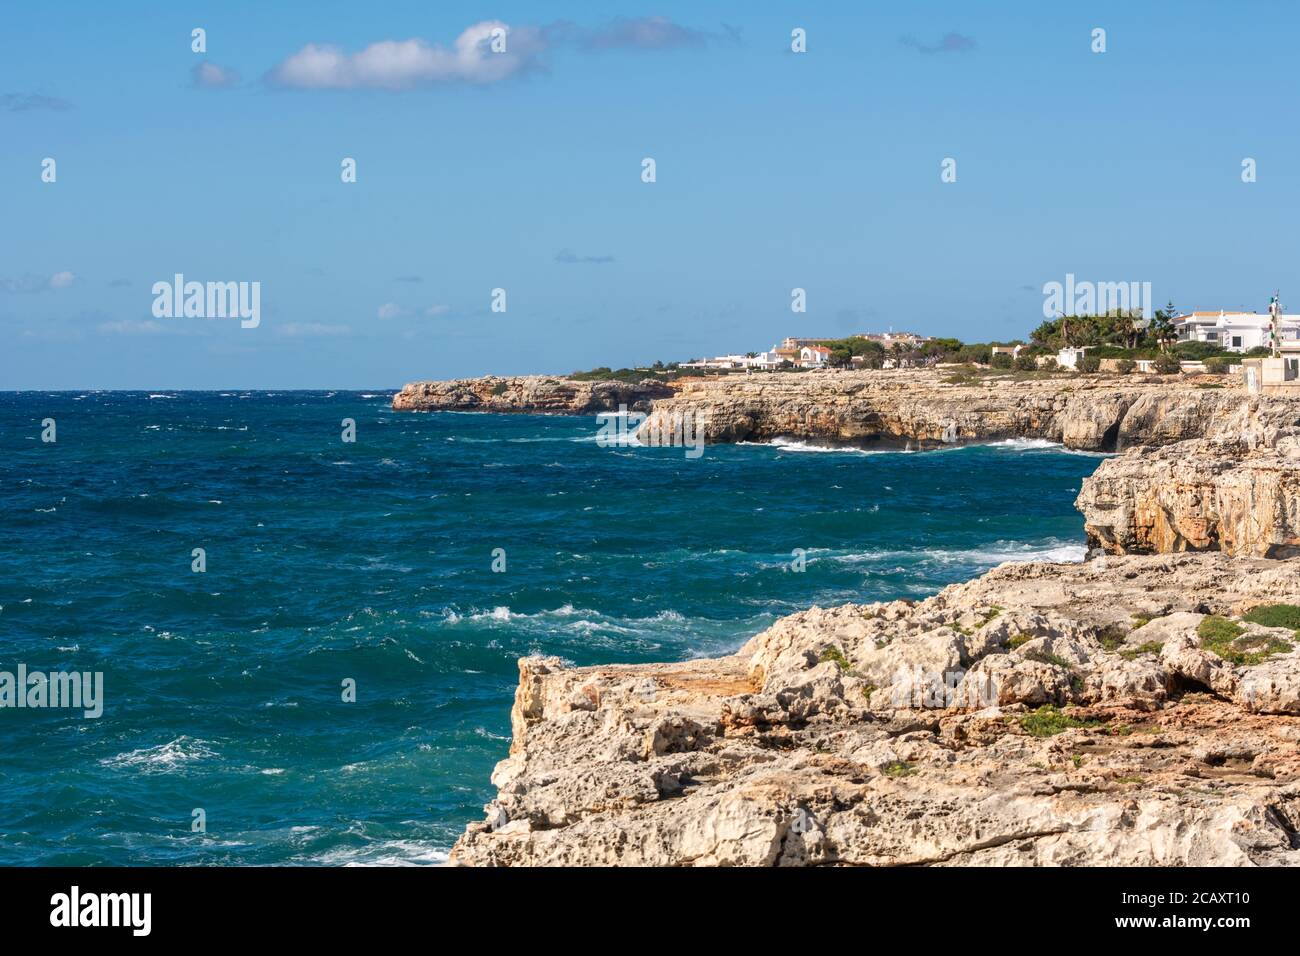 Mar azul y costa rocosa del oeste de Menorca, puerto de Ciutadella. Menorca, España Foto de stock